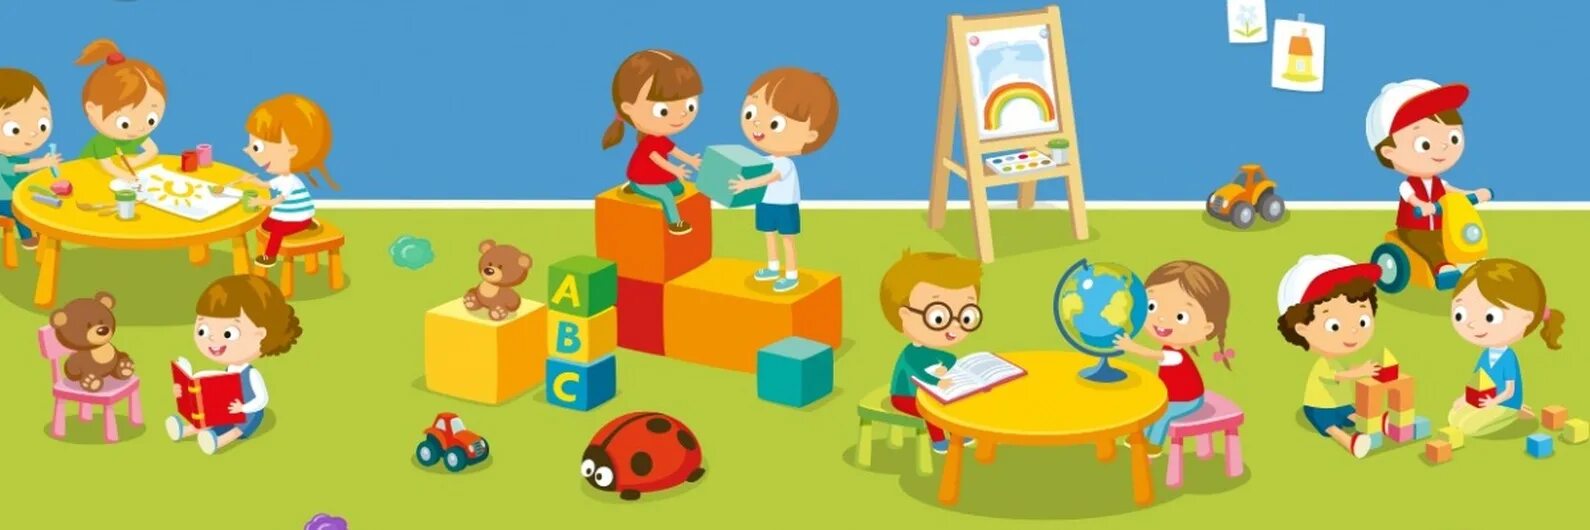 Развивающие презентации для детей. Дети в детском саду. Игры в детском саду. Иллюстрации деток в группе в ДОУ. Картинка детский сад для дошкольников.